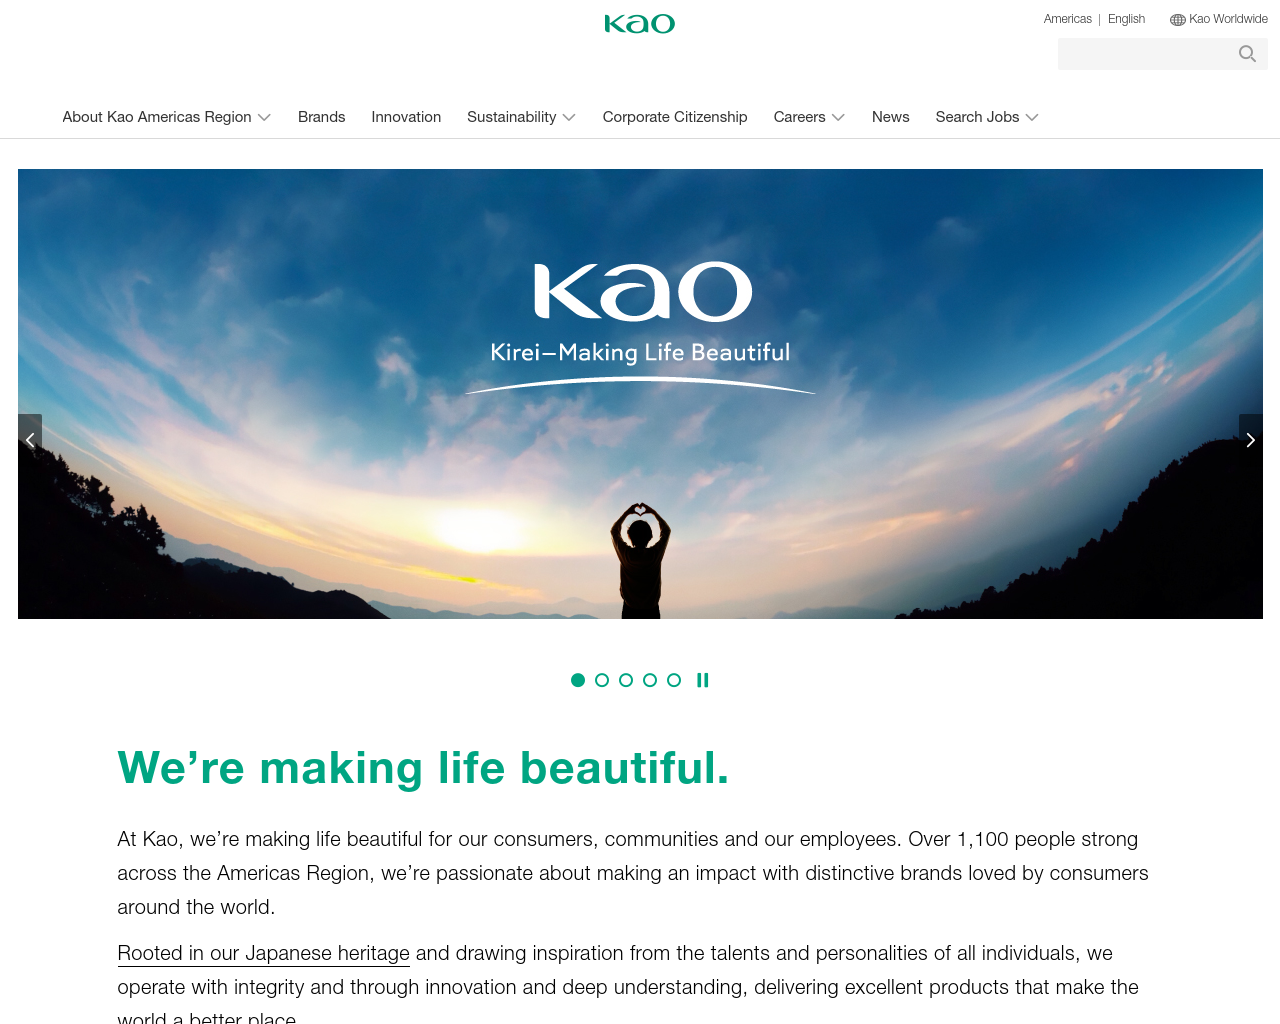 kao.com